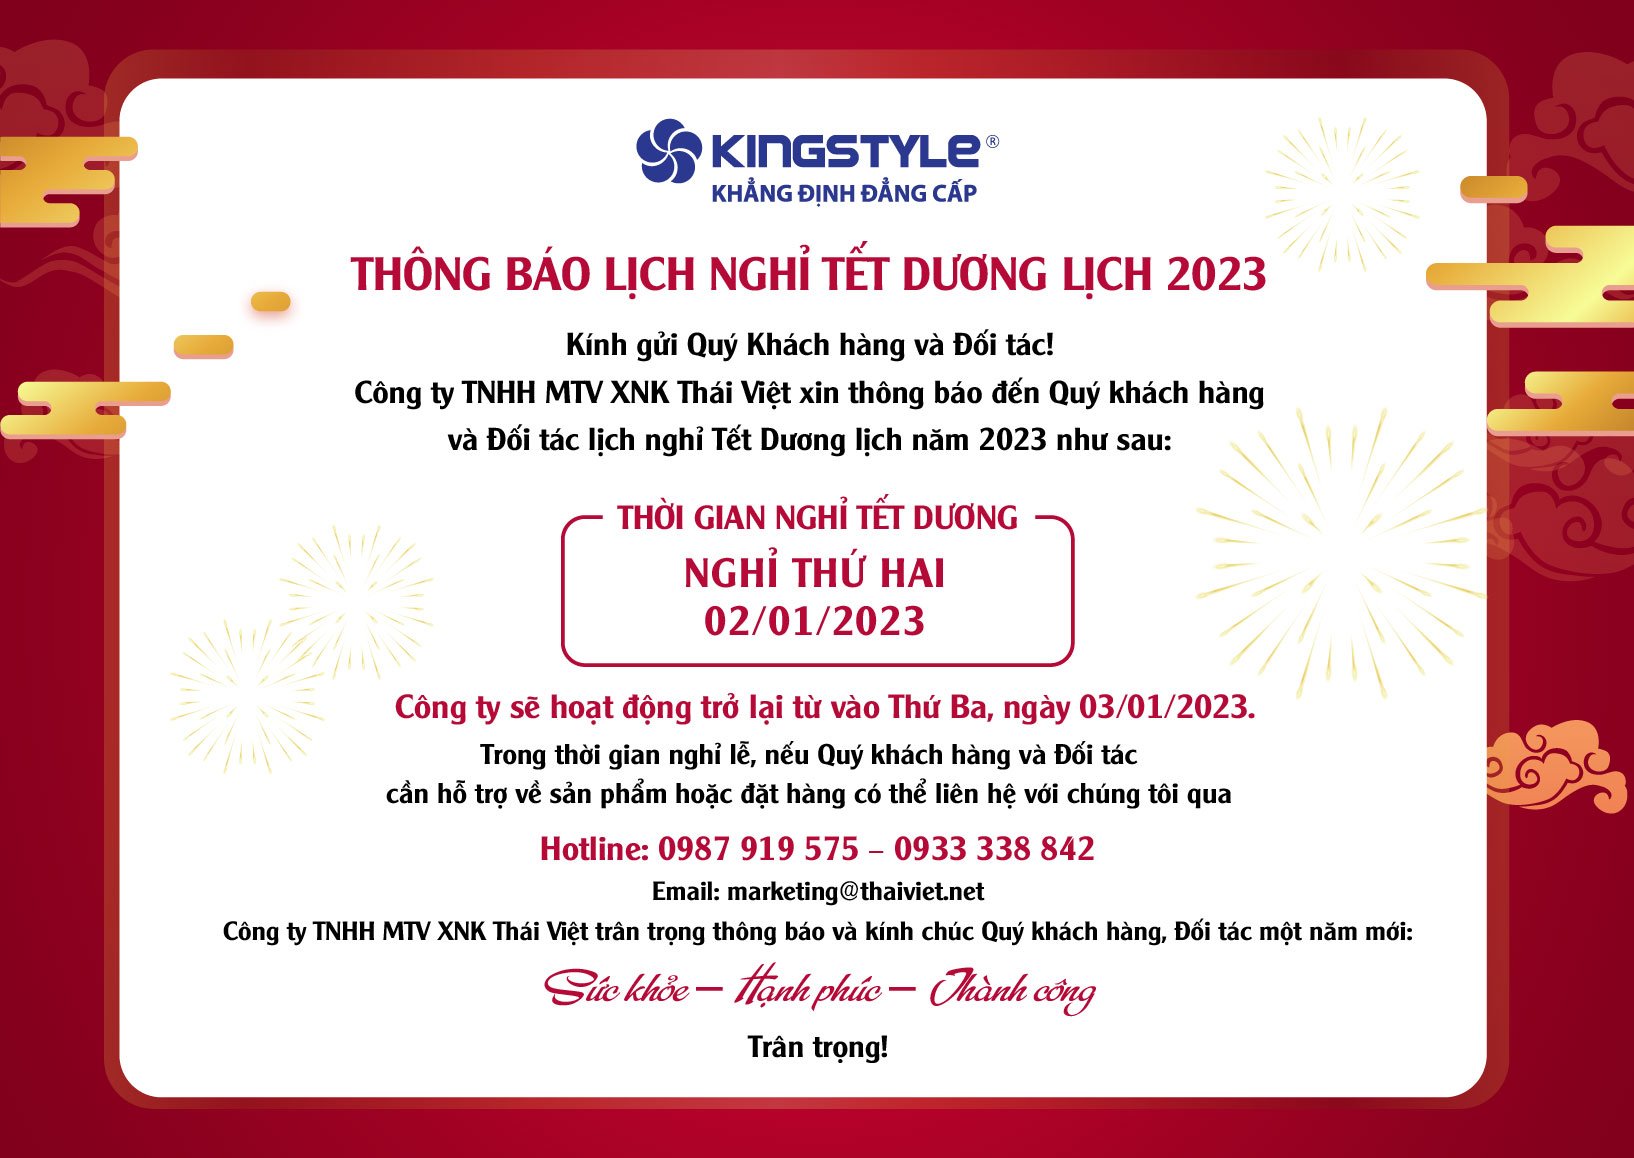 thong-bao-lich-nghi-tet-duong-lich-nam-2023